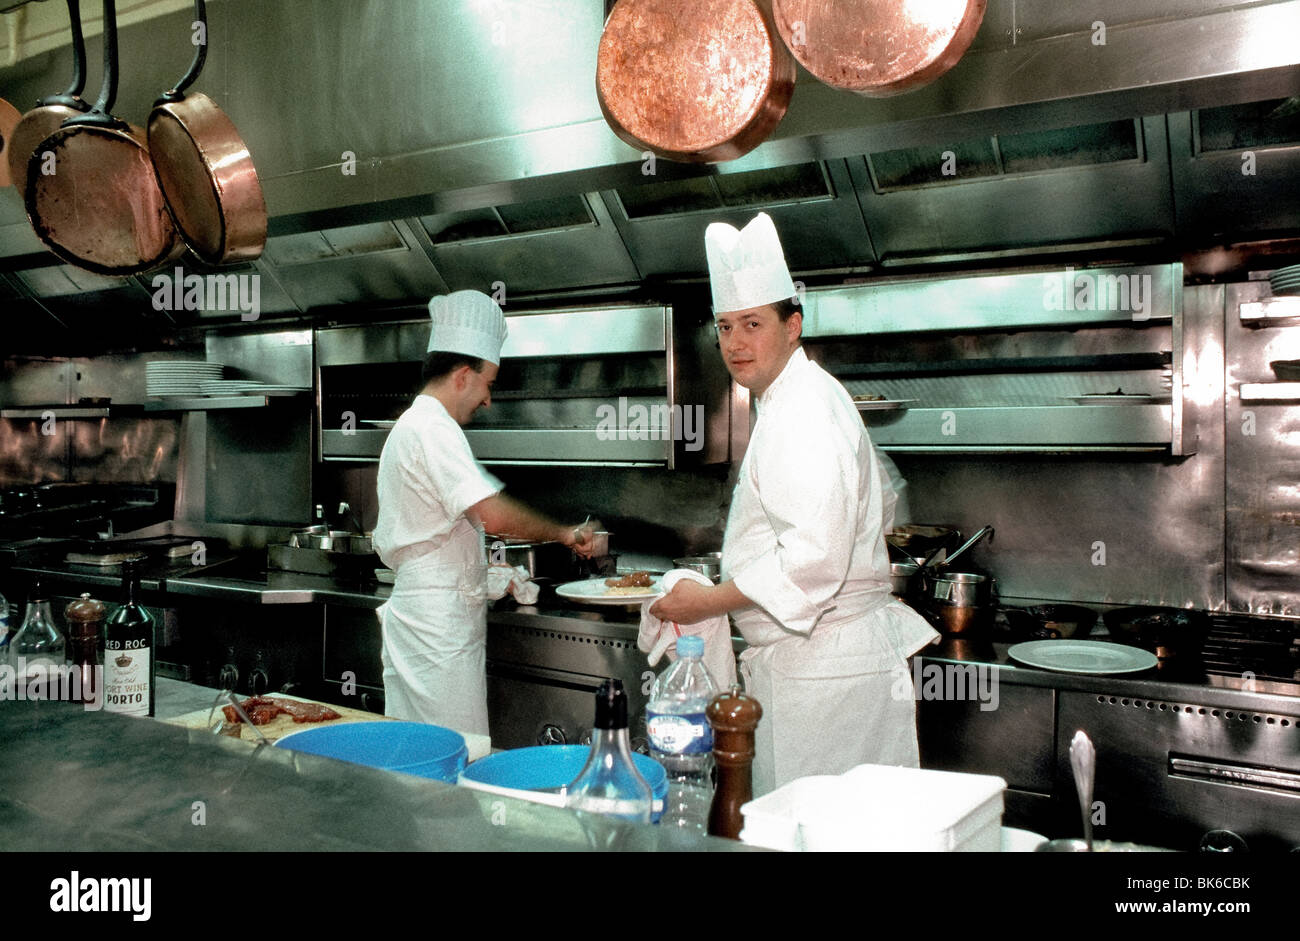 Paris France Professional Kitchen Chefs At Work In Julien French Brasserie BK6CBK 